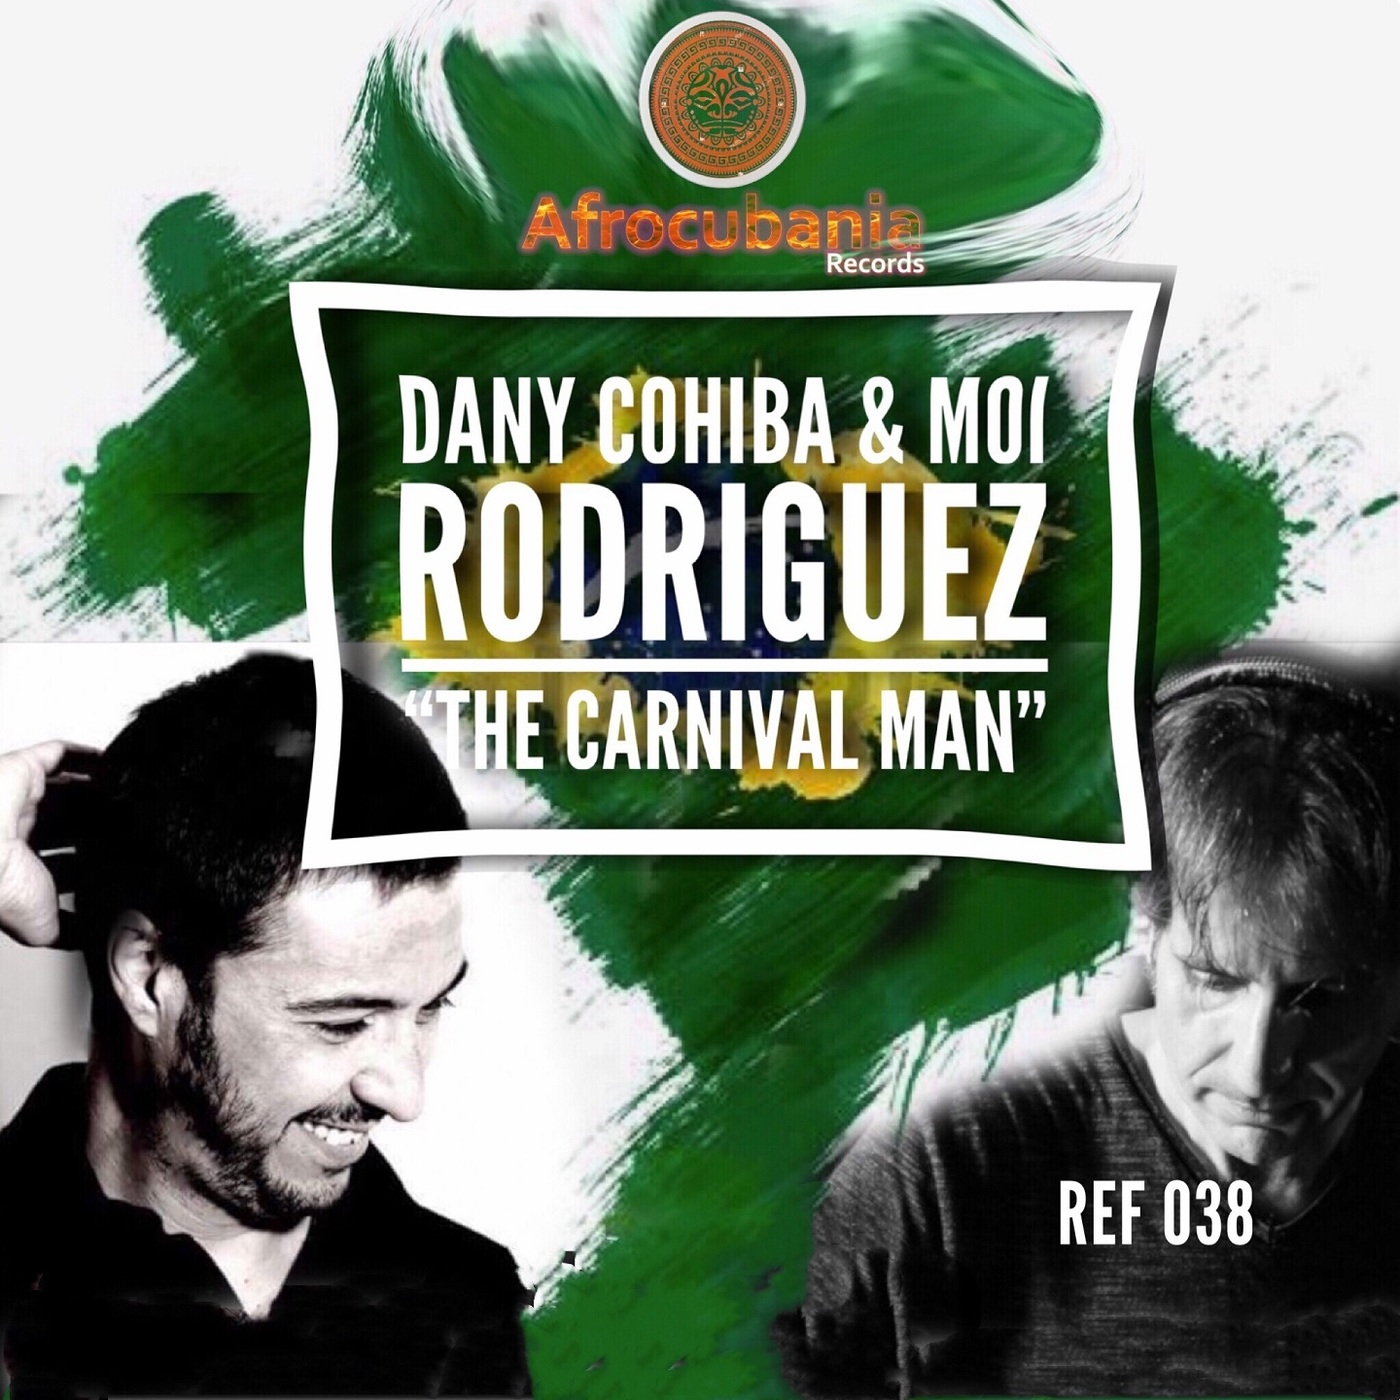 Dany Cohiba & Moi Rodriguez - The Carnival Man / Afrocubania Records